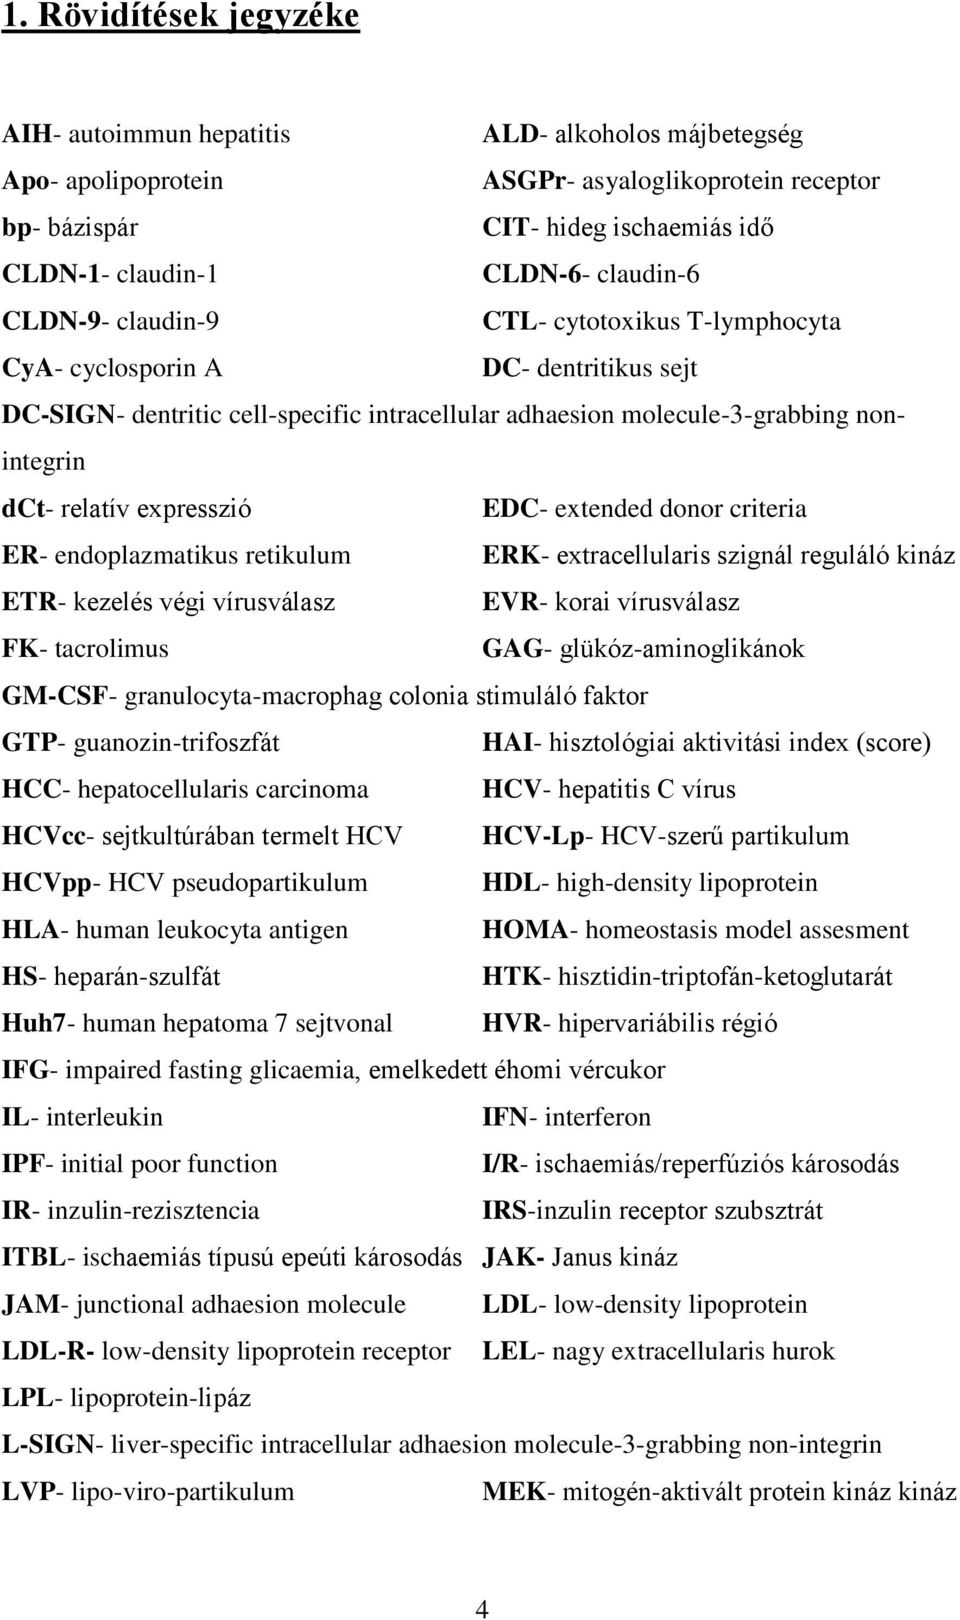 expresszió EDC- extended donor criteria ER- endoplazmatikus retikulum ERK- extracellularis szignál reguláló kináz ETR- kezelés végi vírusválasz EVR- korai vírusválasz FK- tacrolimus GAG-